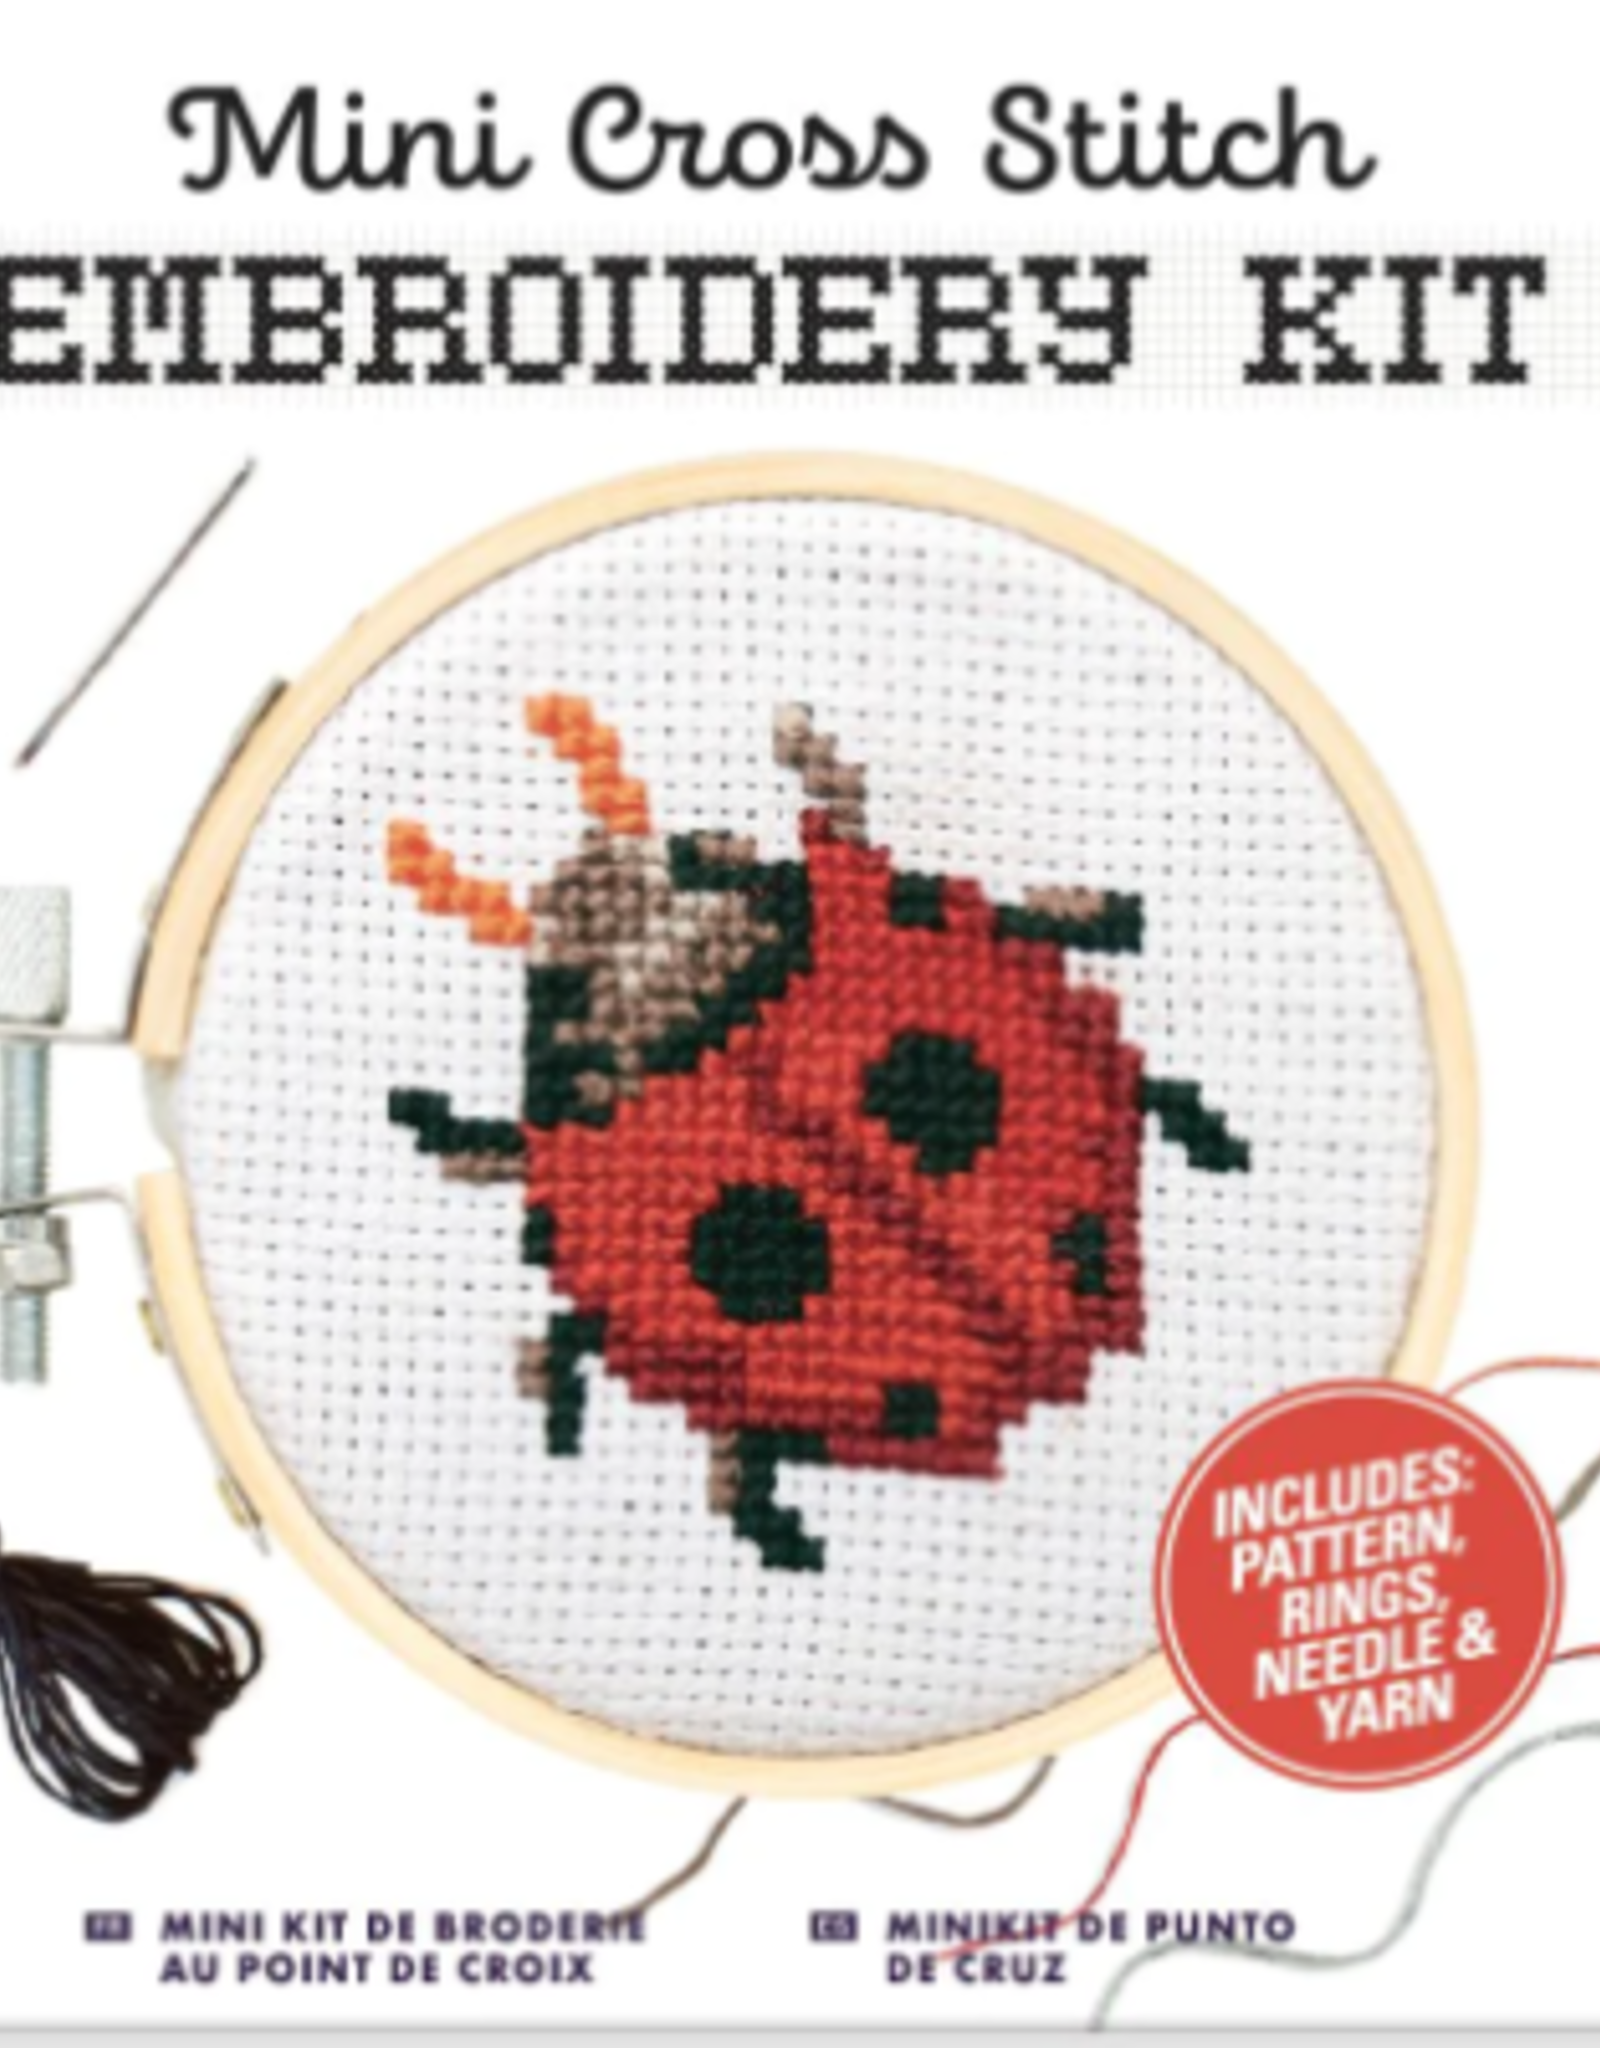 Kikkerland Ladybug Embroidery Kit